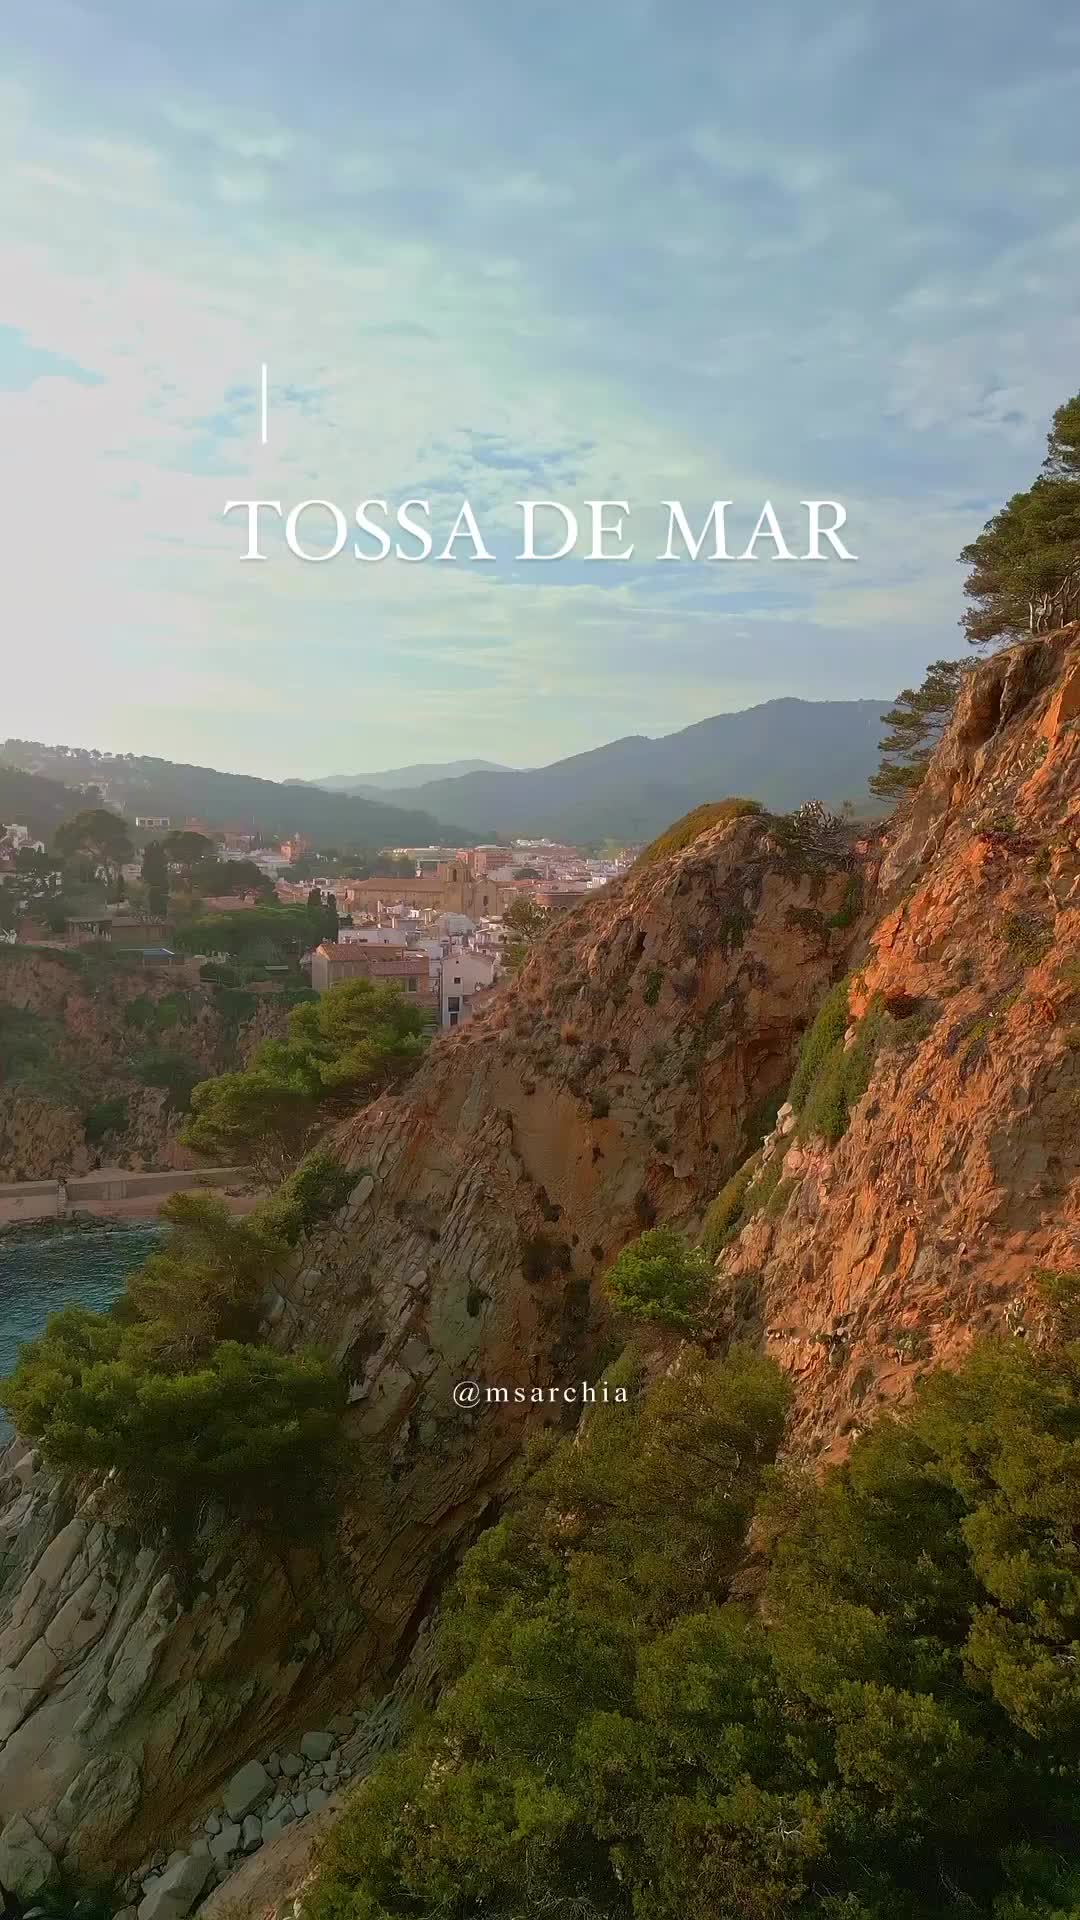 Discover Tossa de Mar: Beaches, History, and Cuisine